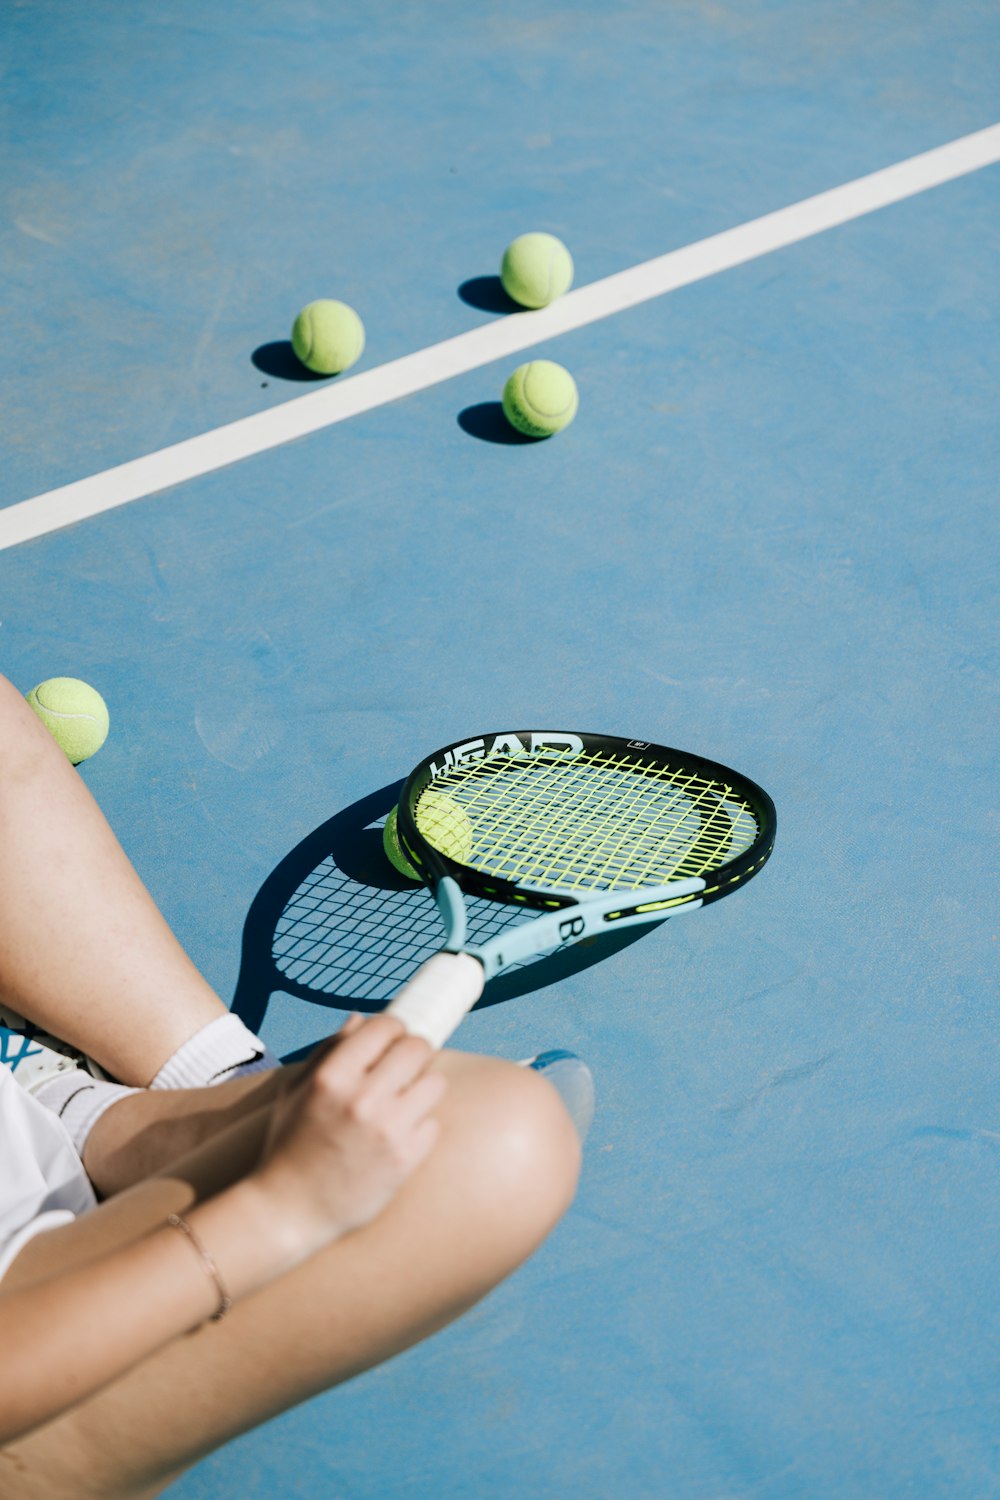 테니스 코트에 앉아 테니스 라켓을 들고 있는 여성